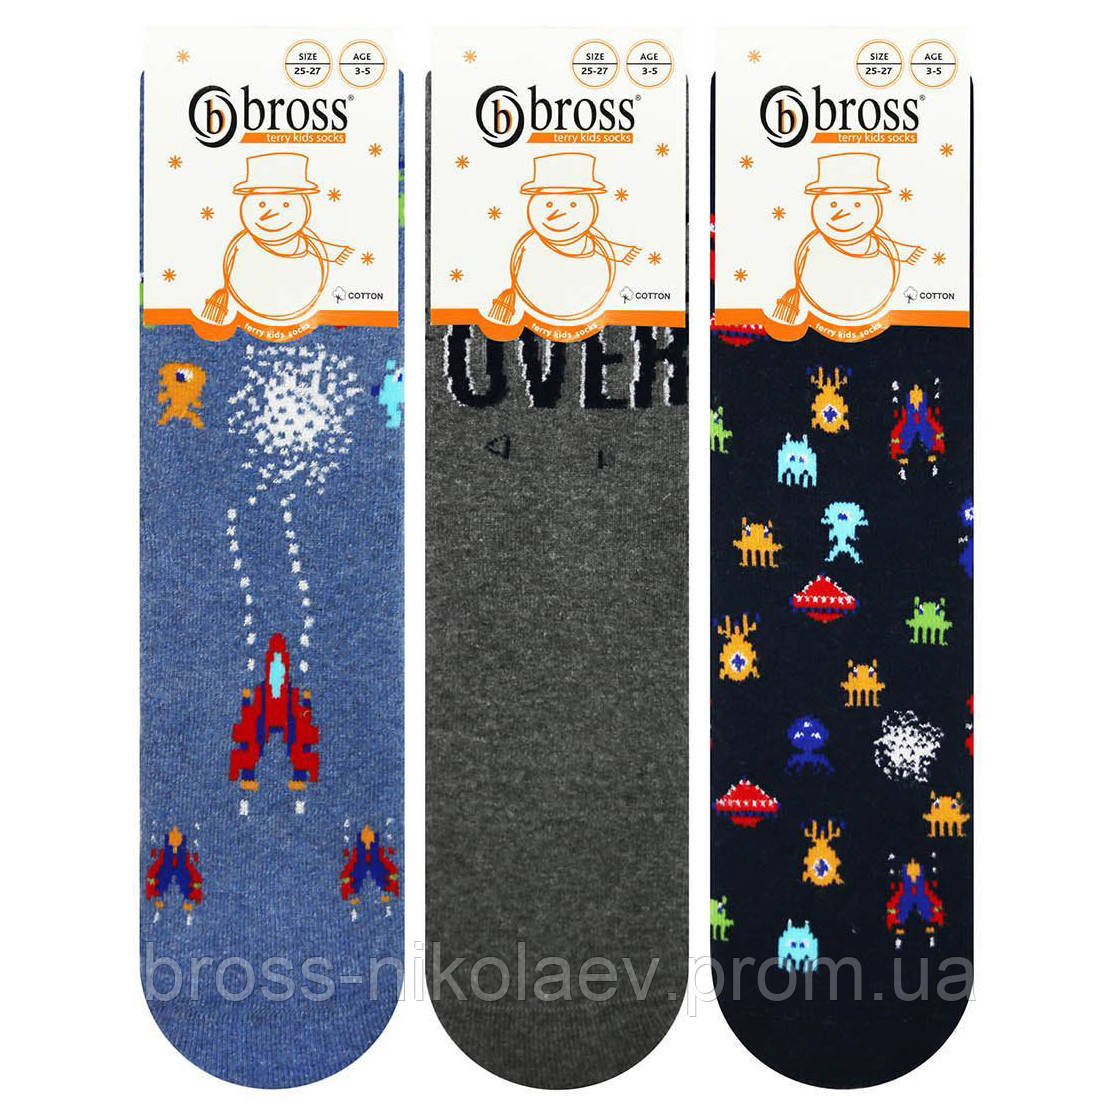 Дитячі махрові шкарпетки 1-3 роки зі стоперами теплі зимові носки махра для хлопчиків та дівчаток BROSS